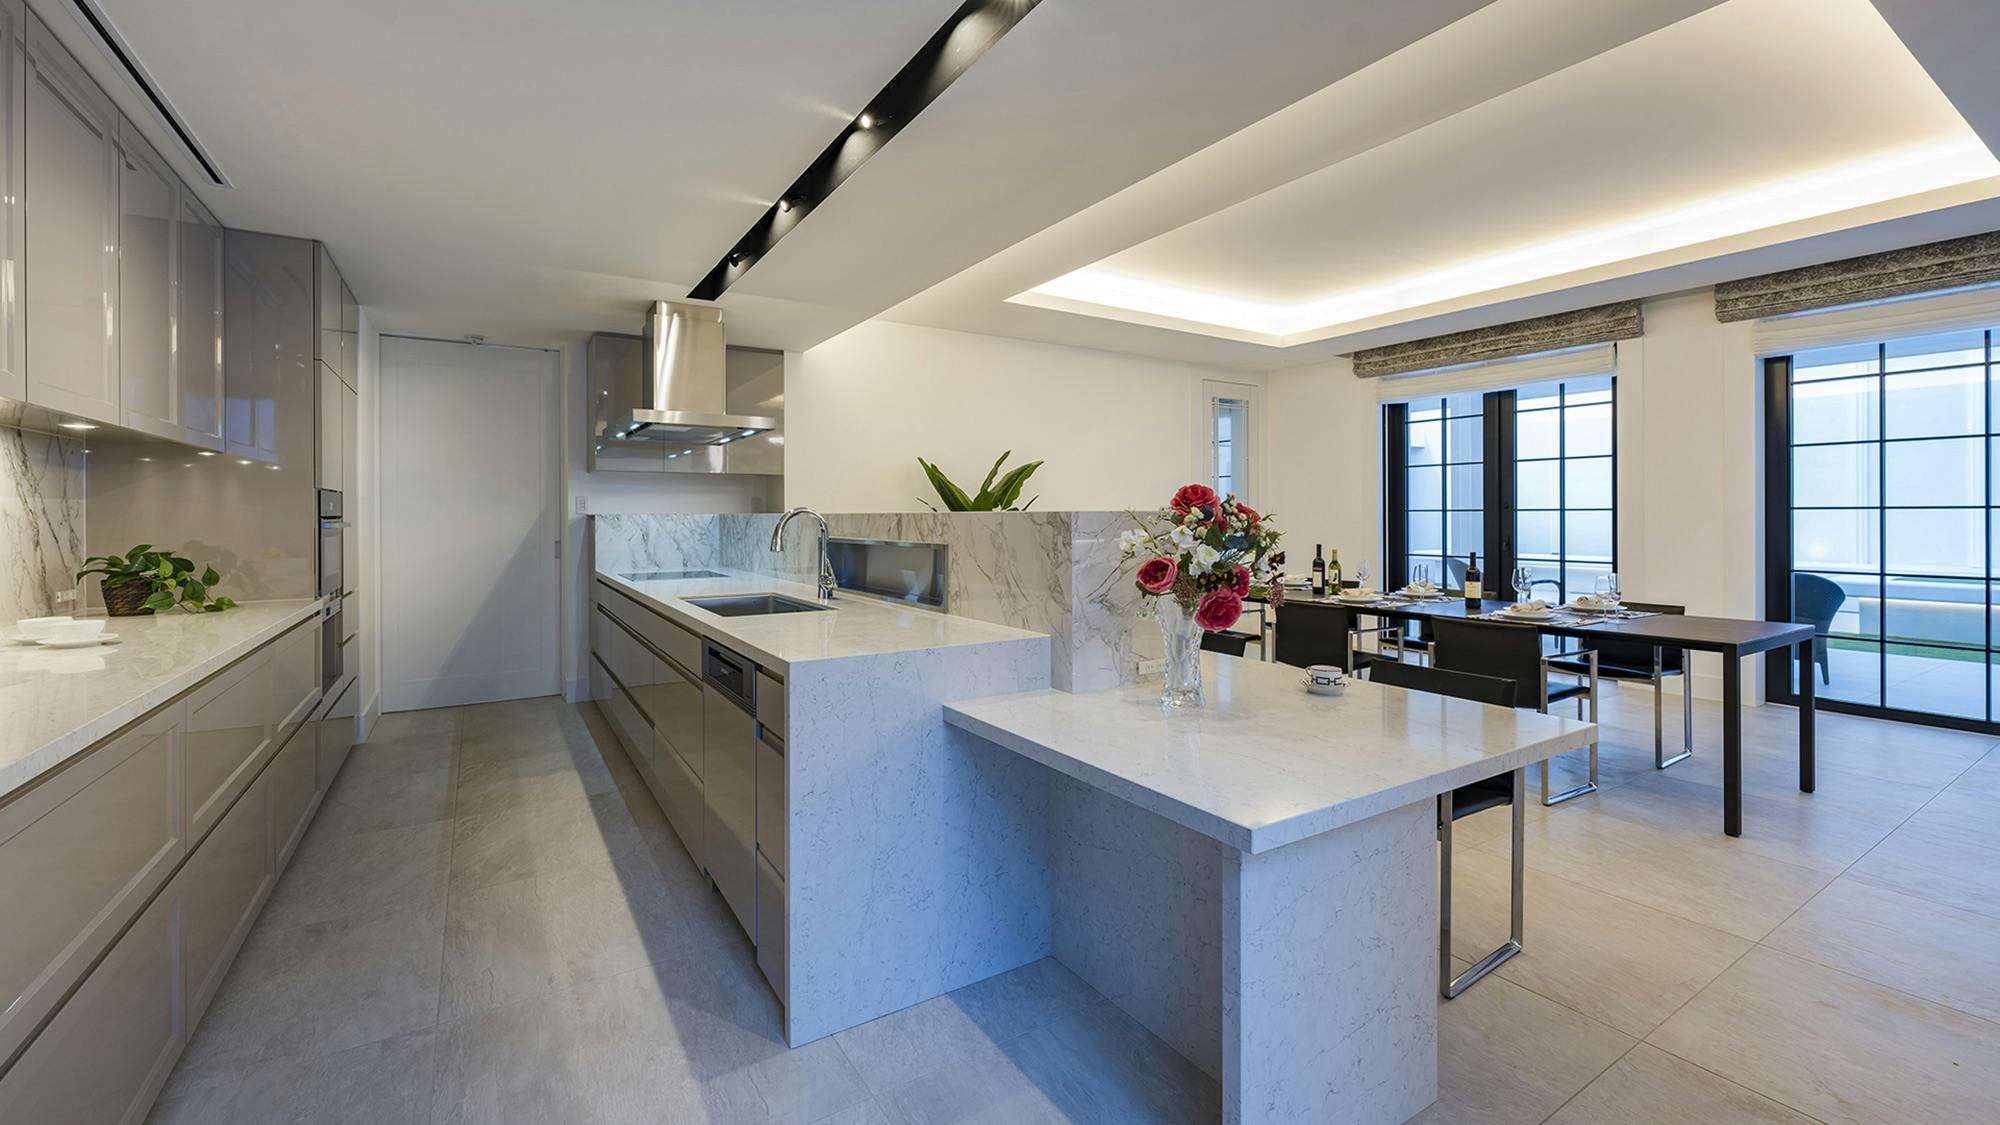 Numero immagine 32 della sezione corrente di DKTN and Silestone enhance the kitchen and bathroom design in a Tokyo home di Cosentino Italia